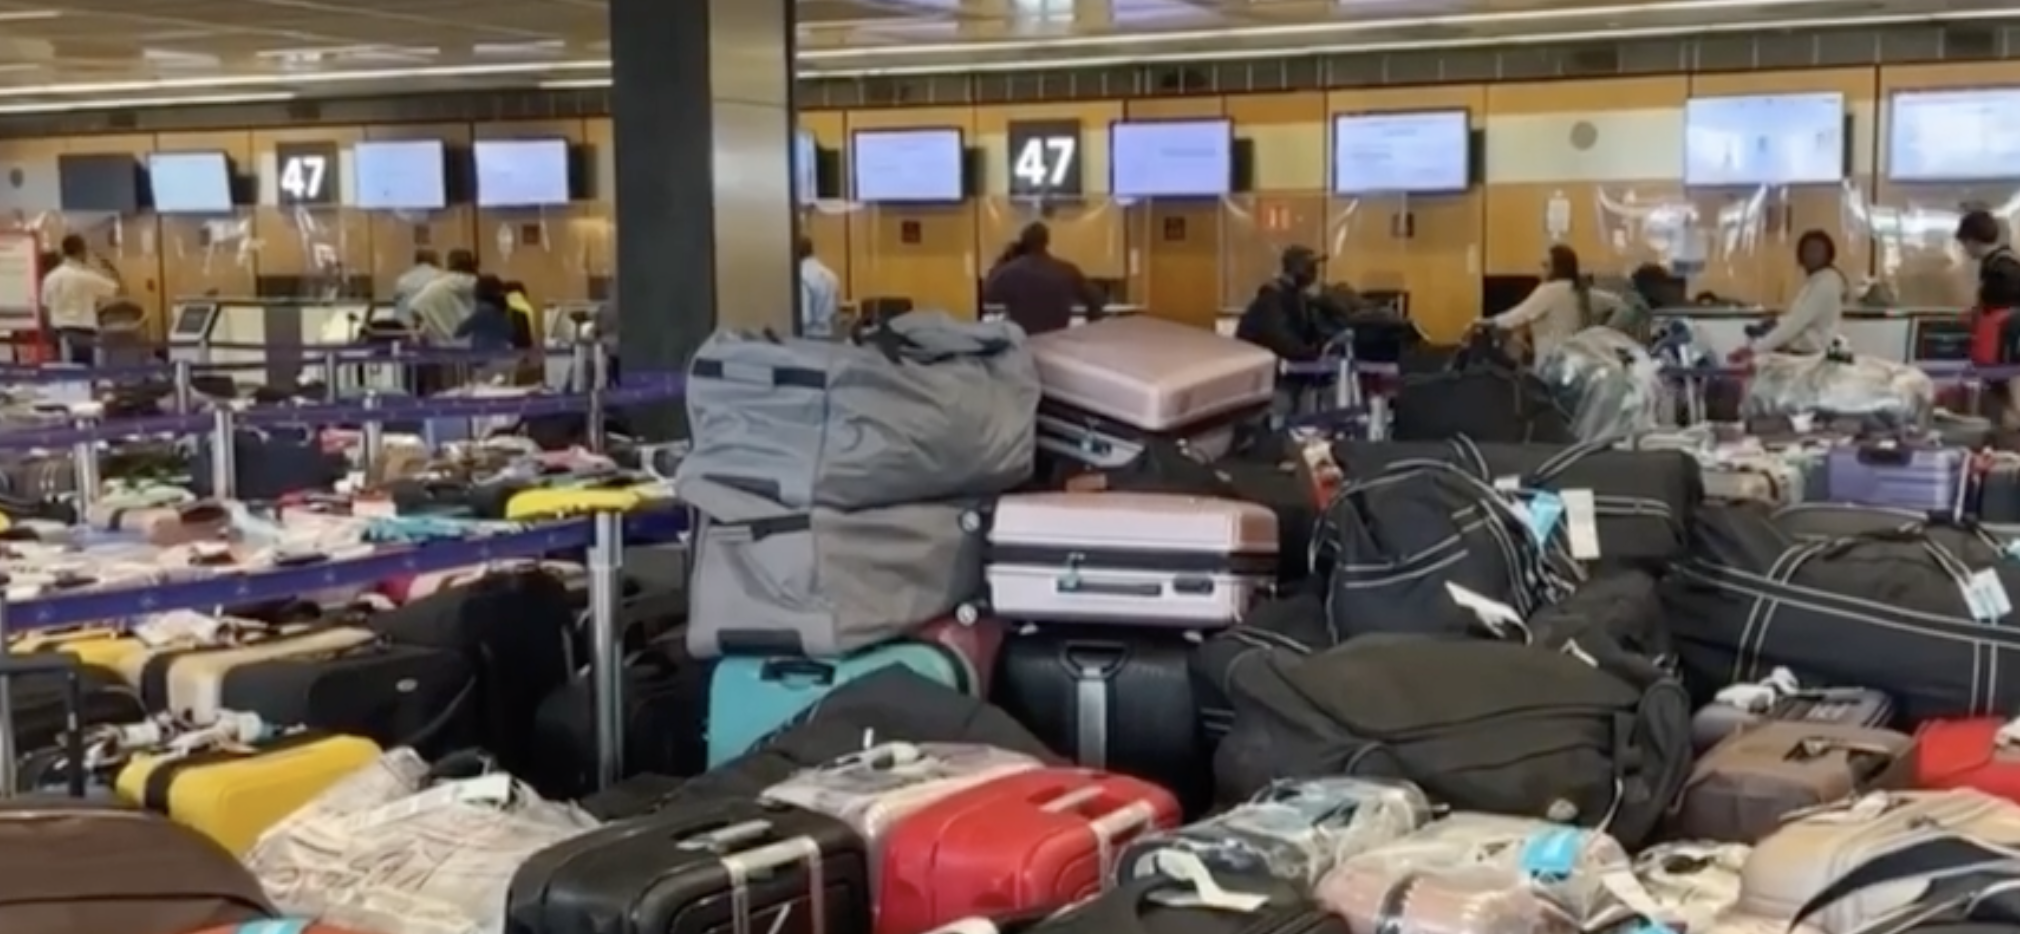     Après la panne à Orly, les voyageurs d’Air Caraïbes ont récupéré leurs bagages

